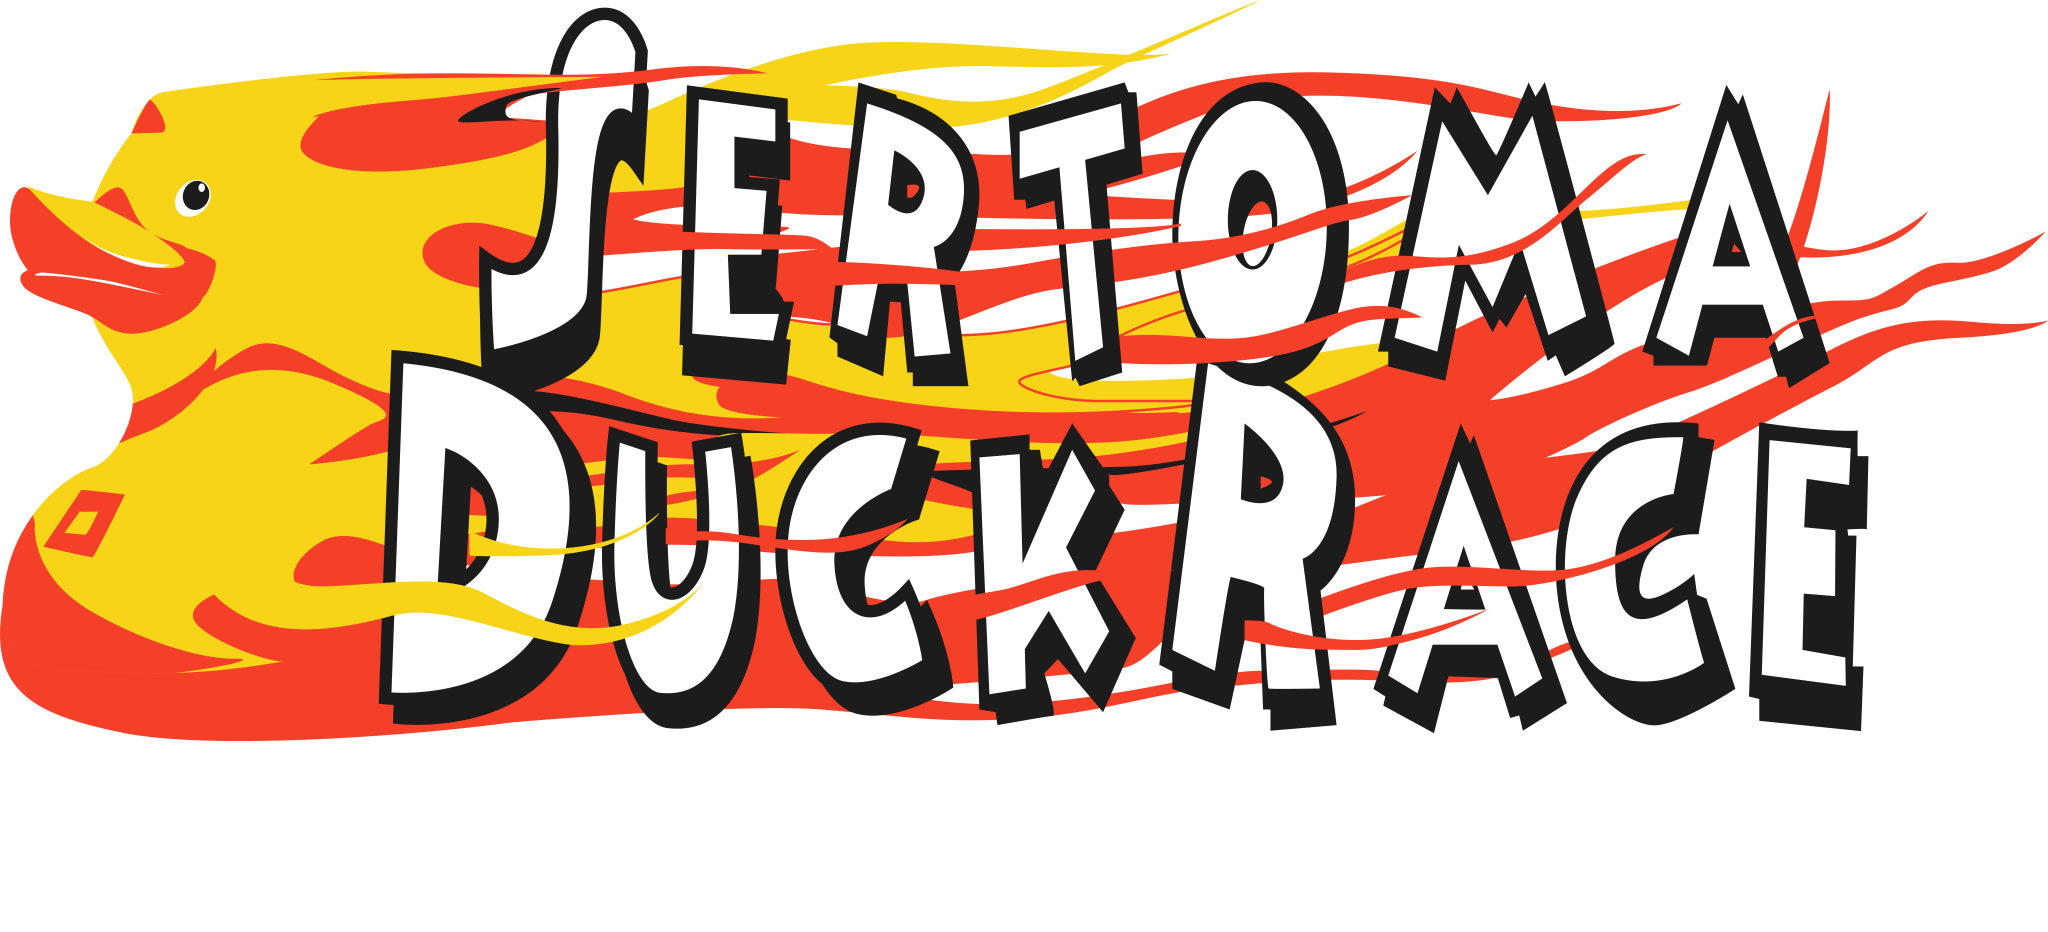 Sertoma Duck Race Festival 4csertoma